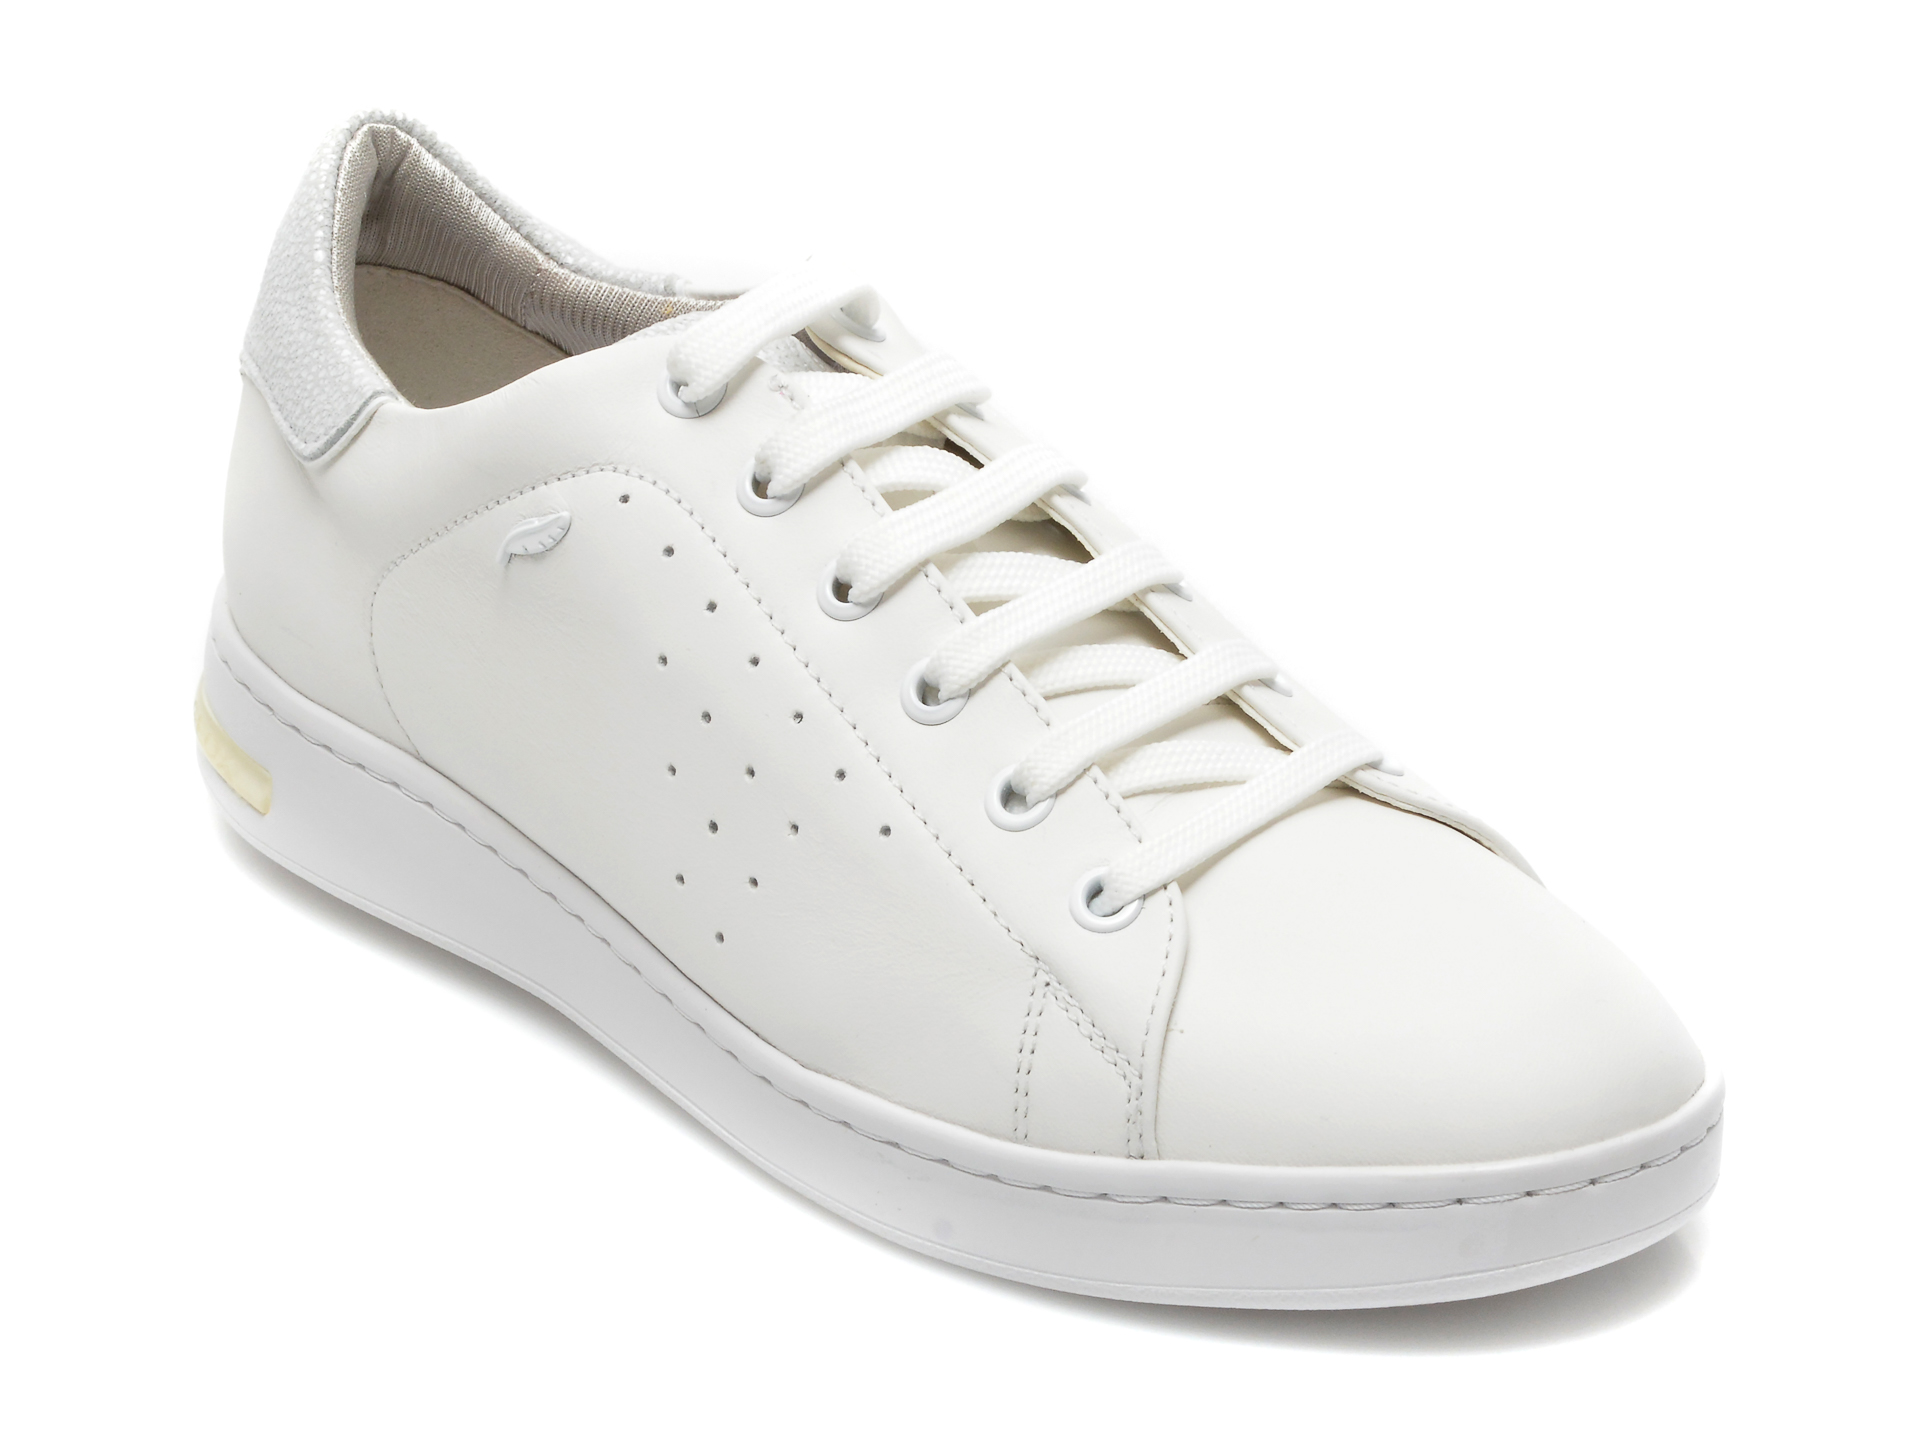 Pantofi sport GEOX albi, D621BA, din piele naturala